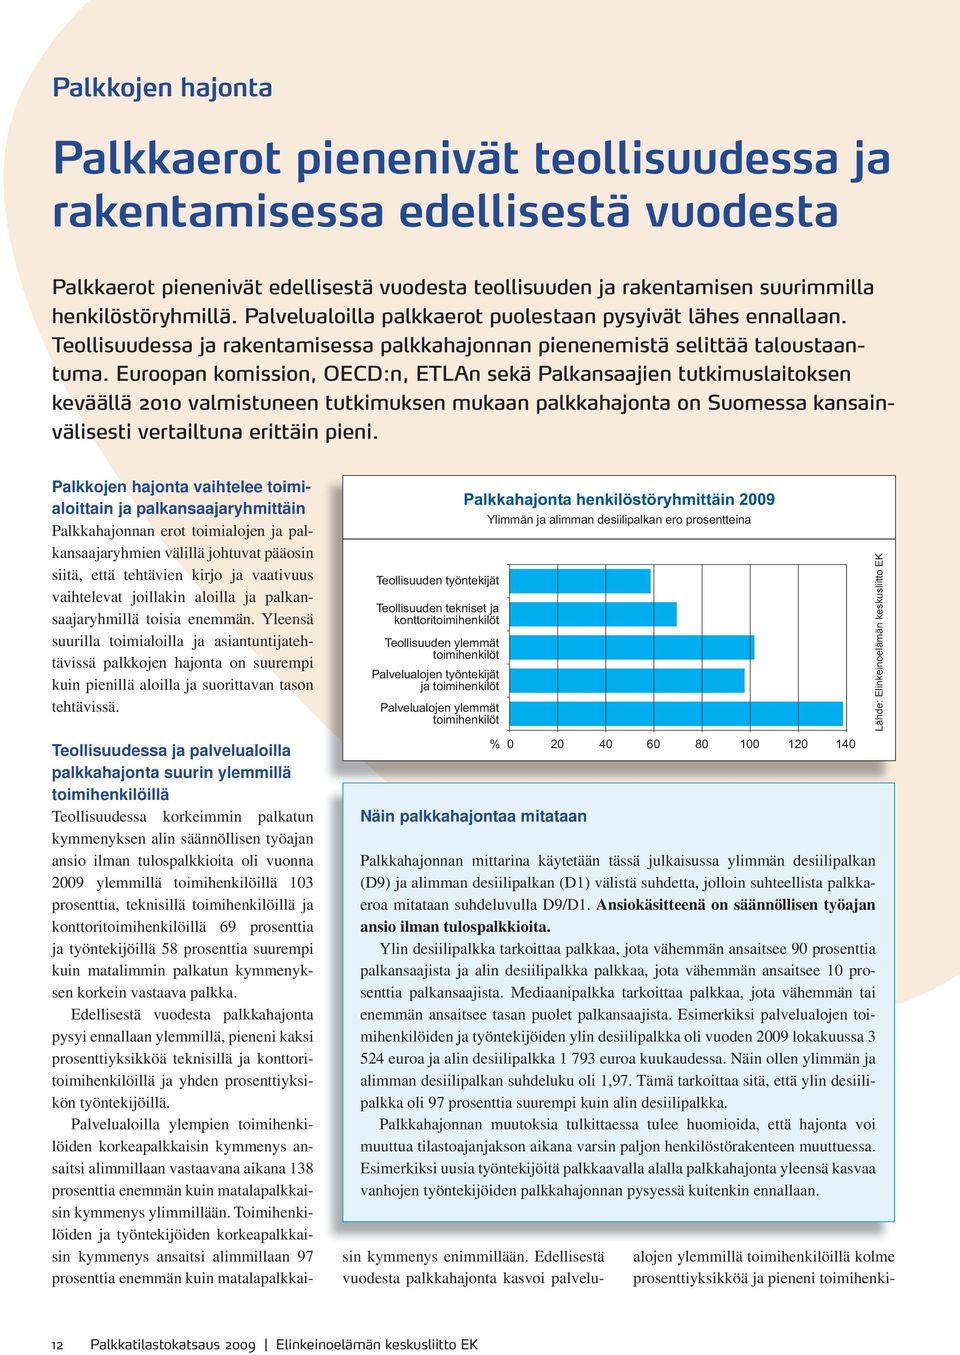 Euroopan komission, OECD:n, ETLAn sekä Palkansaajien tutkimuslaitoksen keväällä 2010 valmistuneen tutkimuksen mukaan palkkahajonta on Suomessa kansainvälisesti vertailtuna erittäin pieni.